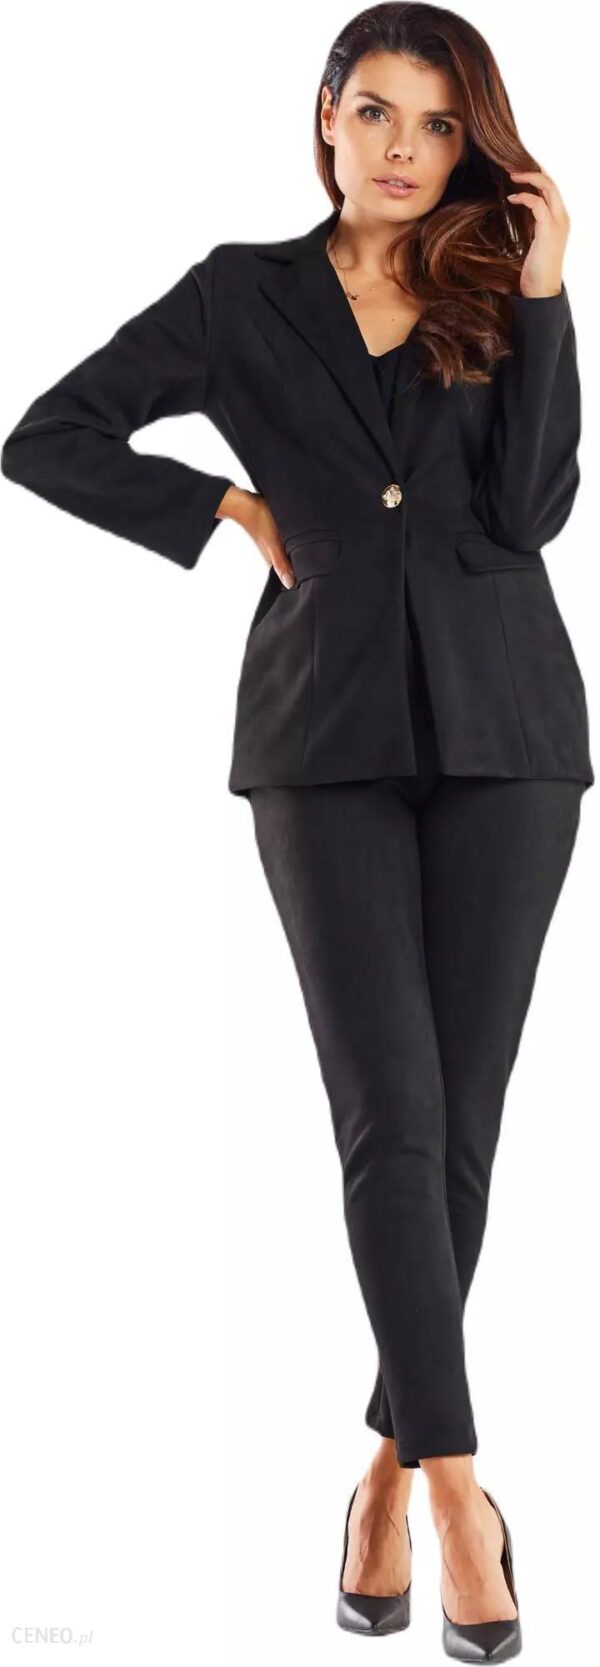 Zamszowy garnitur damski z wąskimi nogawkami